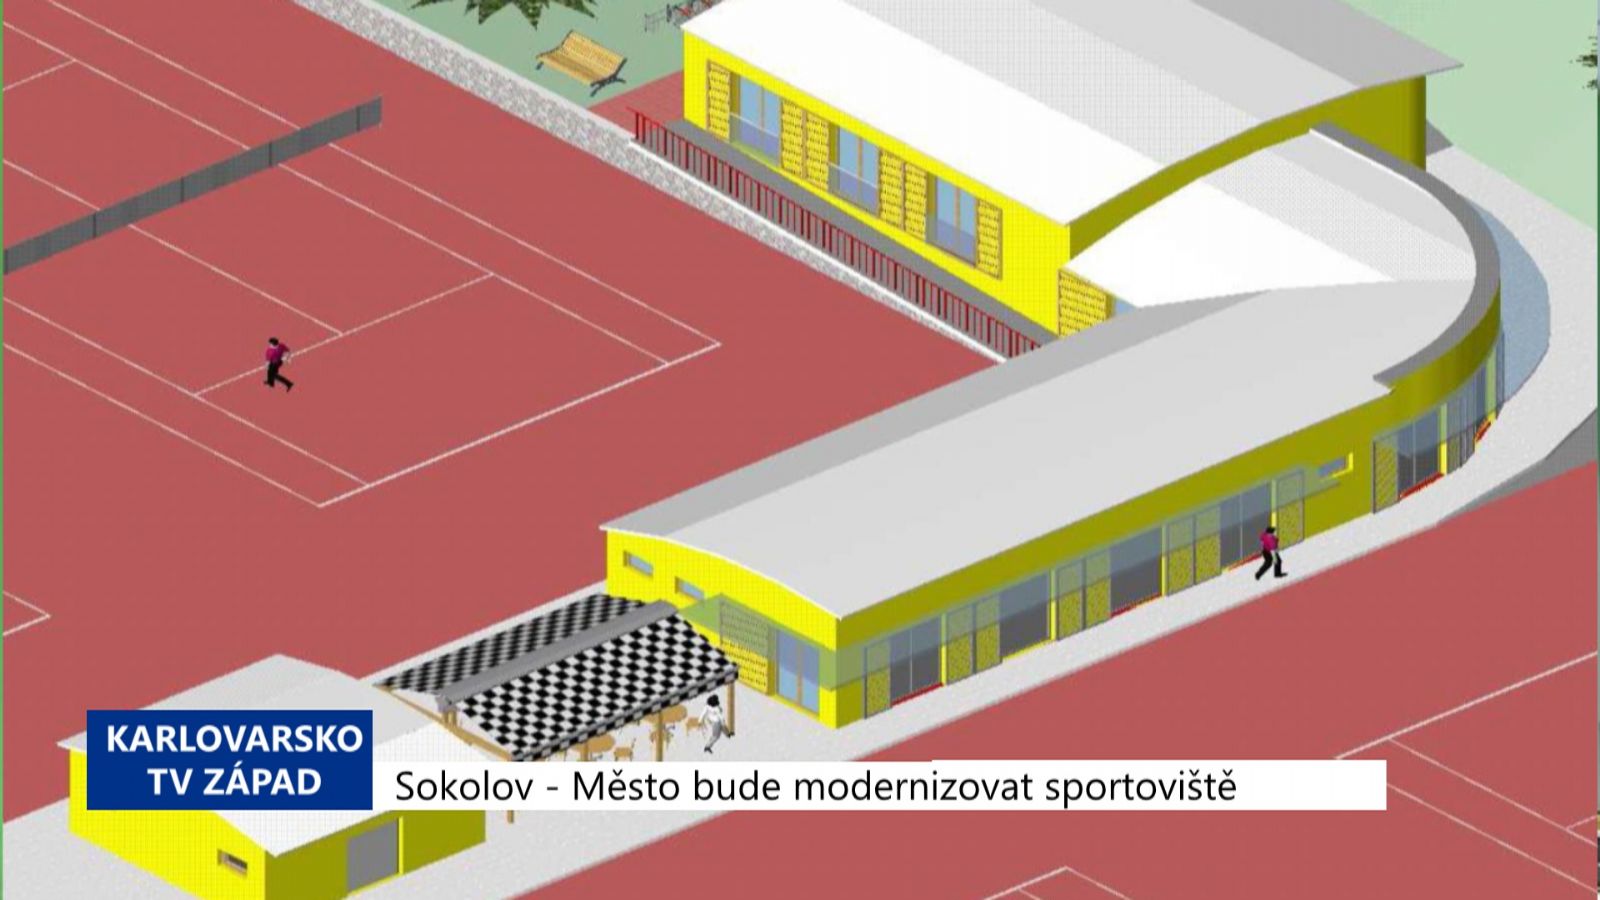 Sokolov: Město bude v příštích letech modernizovat sportoviště (TV Západ)